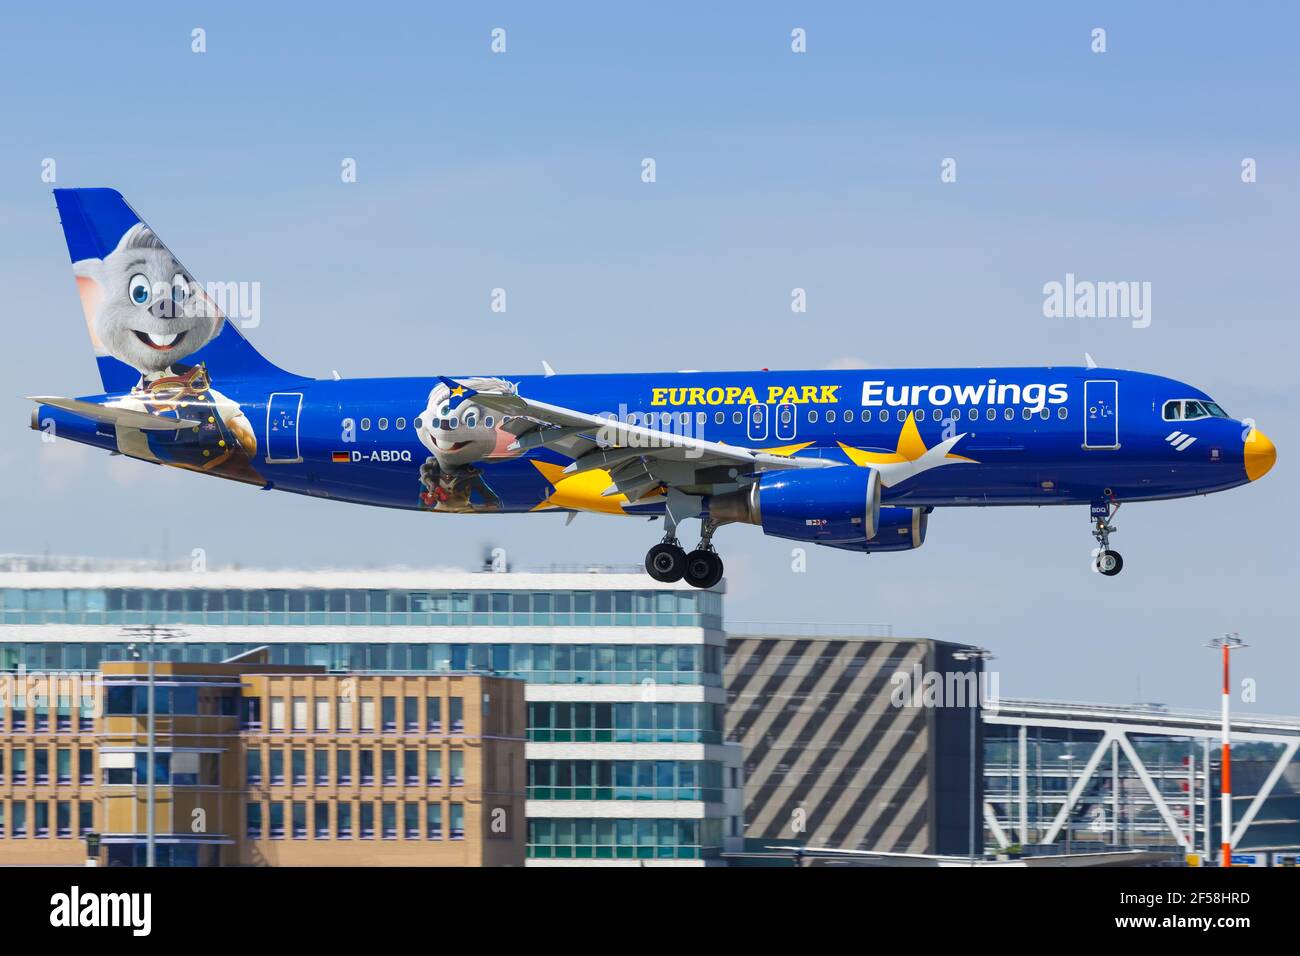 Stoccarda, Germania - 21 maggio 2018: Aereo Eurowings Airbus A320 all'aeroporto di Stoccarda in Germania. Airbus è un produttore europeo di aeromobili con sede in Foto Stock